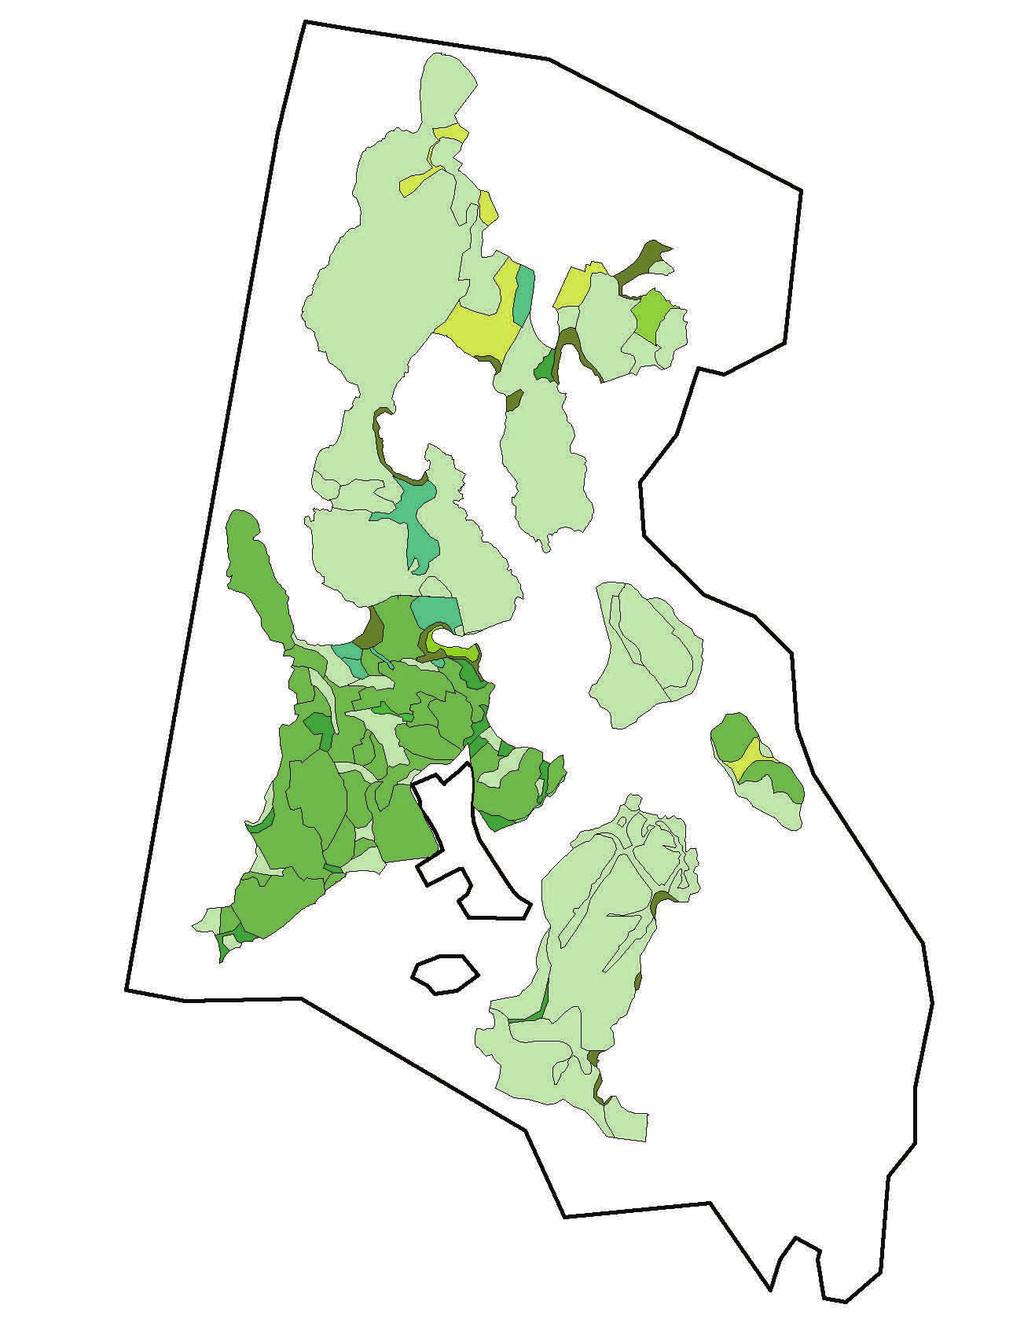 a b Figur. Exempel på geografisk uppföljningsstruktur för ett storområde (Trossö-Kalvö-Lindö). a) Uppföljningsytor av olika naturtyper (olika färger) i storområdet.